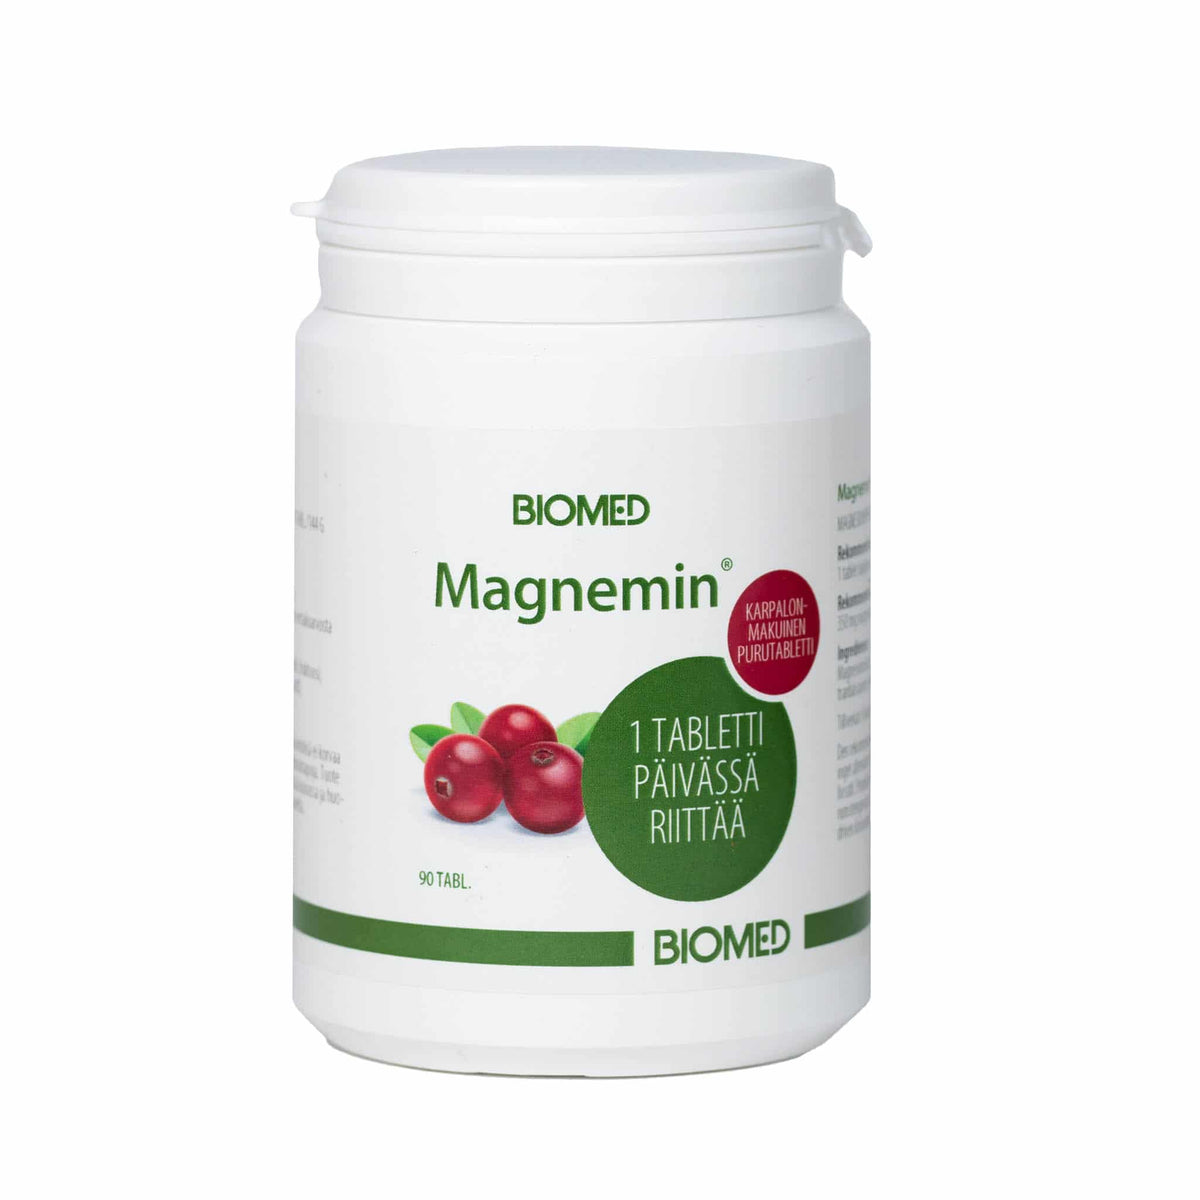 Biomed Magnemin - Magnesiumvalmiste 90 tabl.